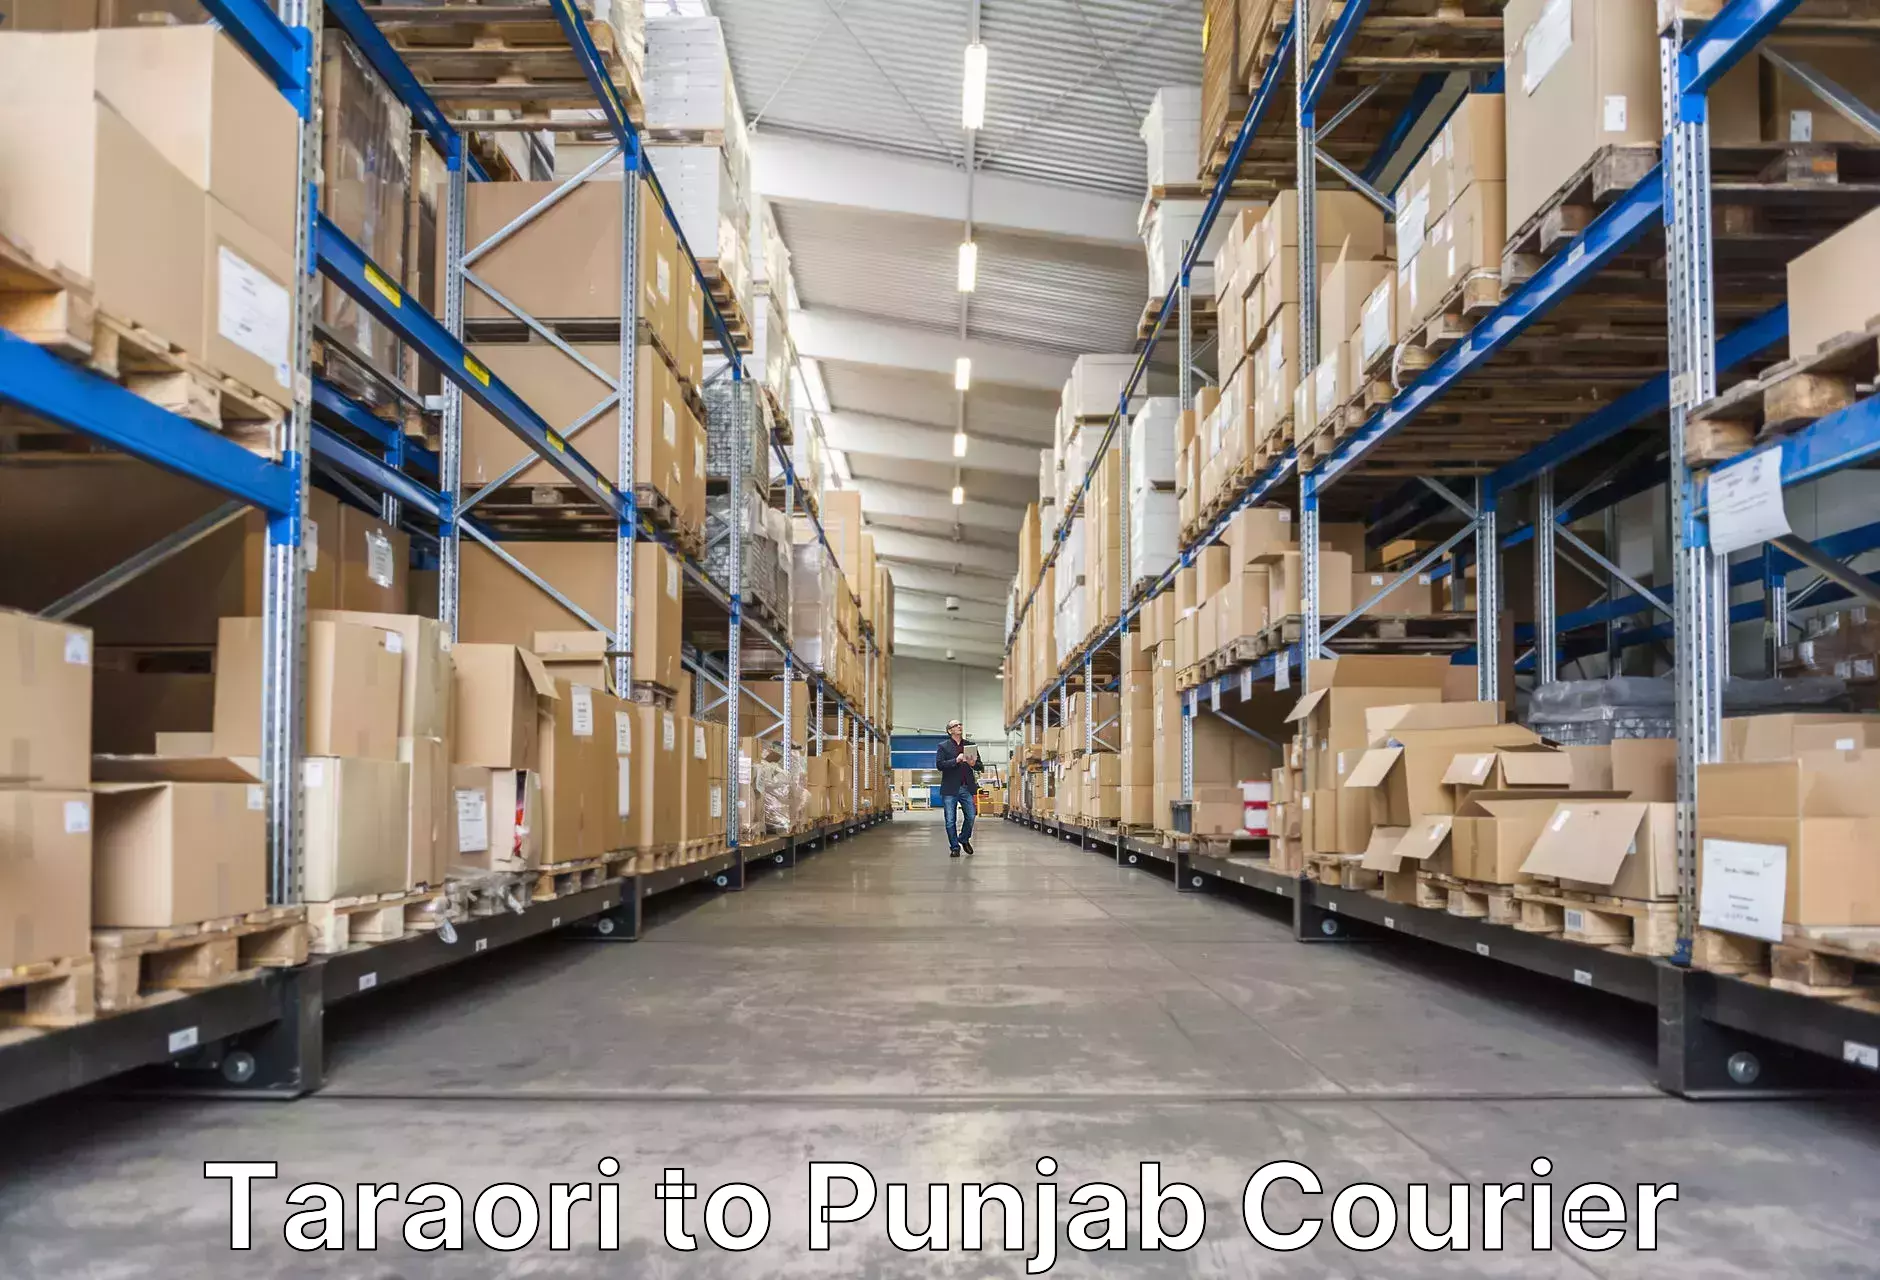 Baggage shipping experts Taraori to Punjab